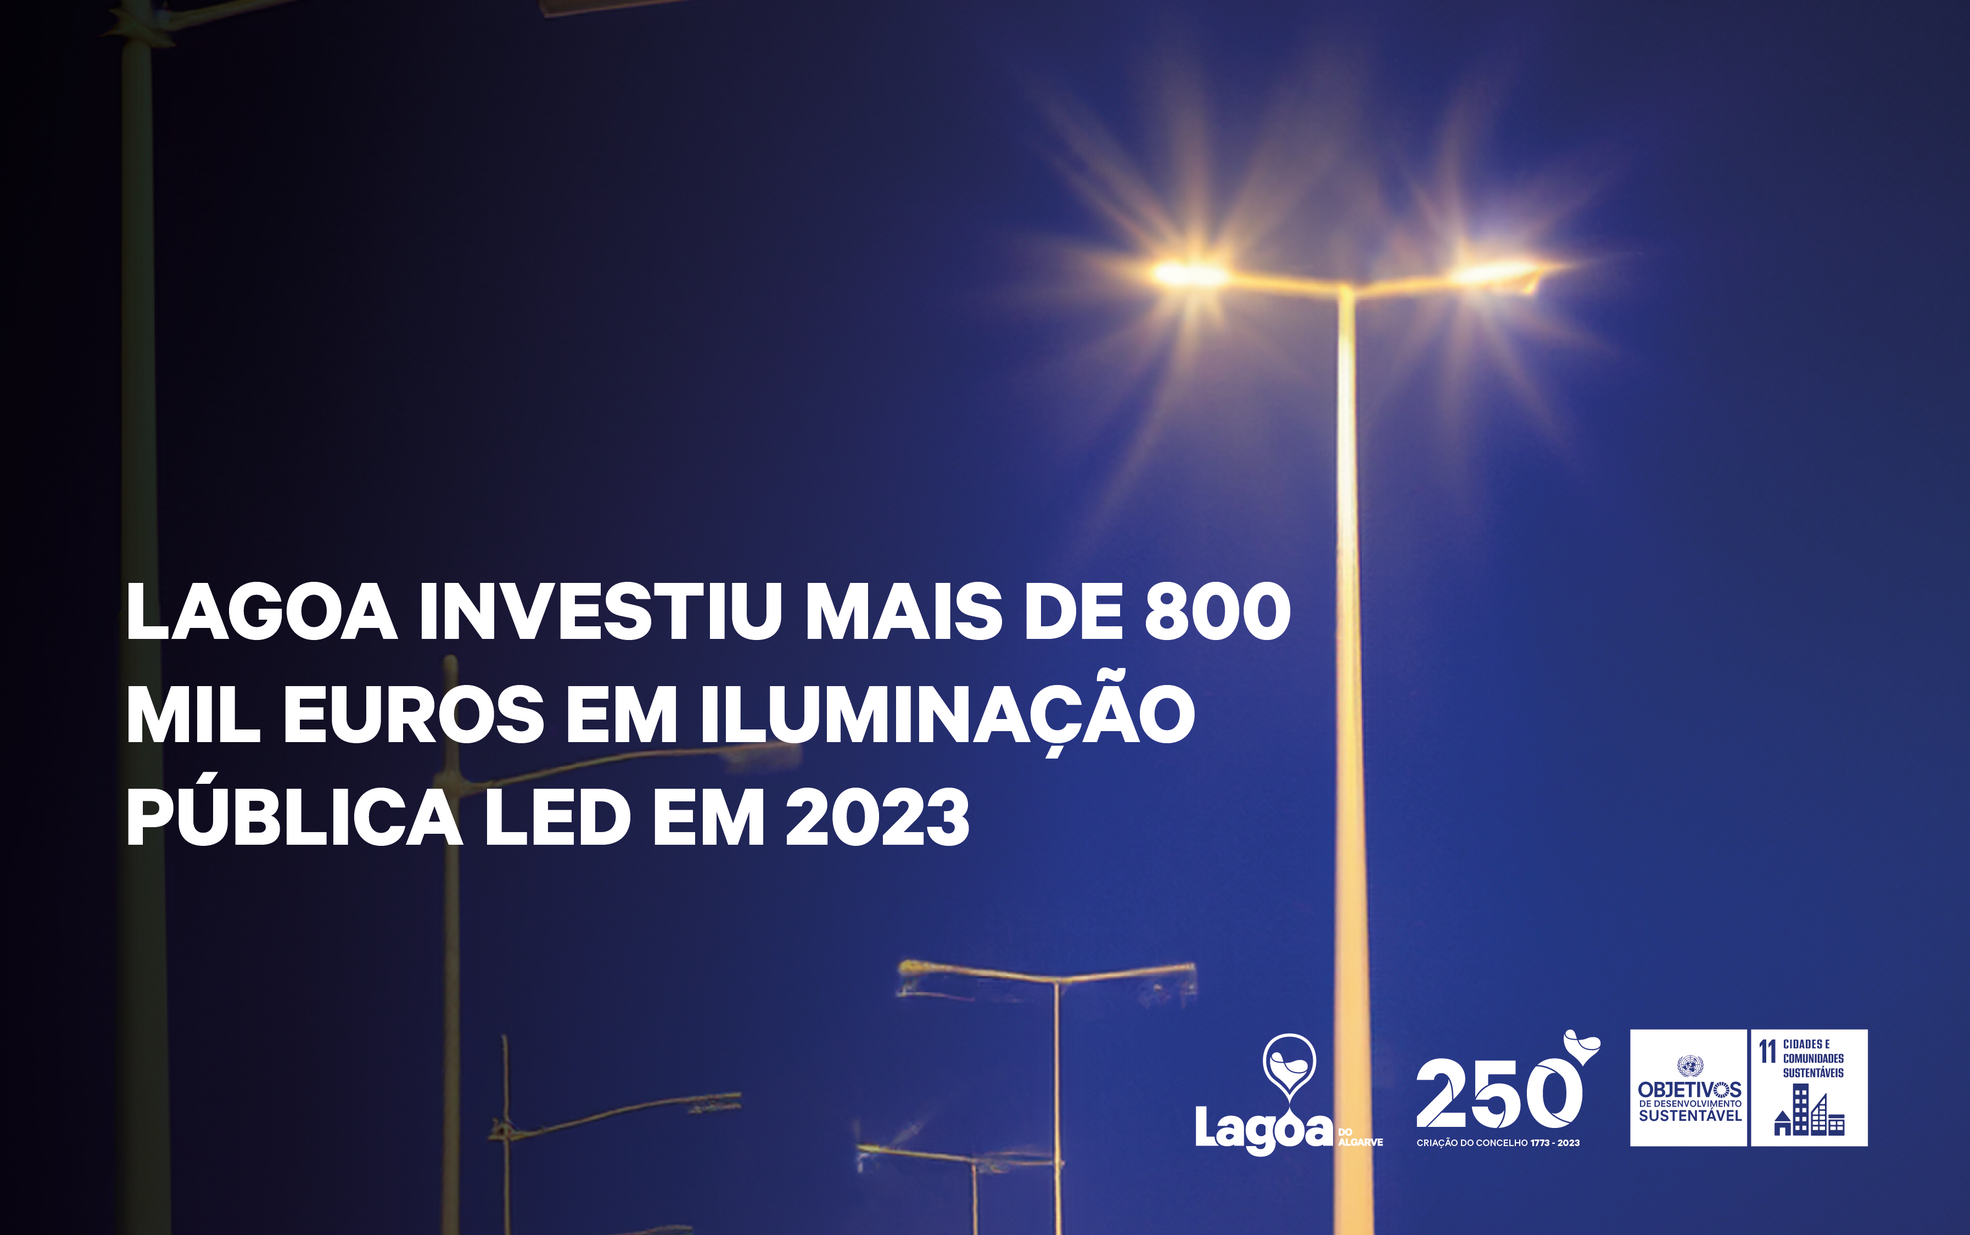 Município de Lagoa investiu mais de 800 mil euros em iluminação pública LED em 2023